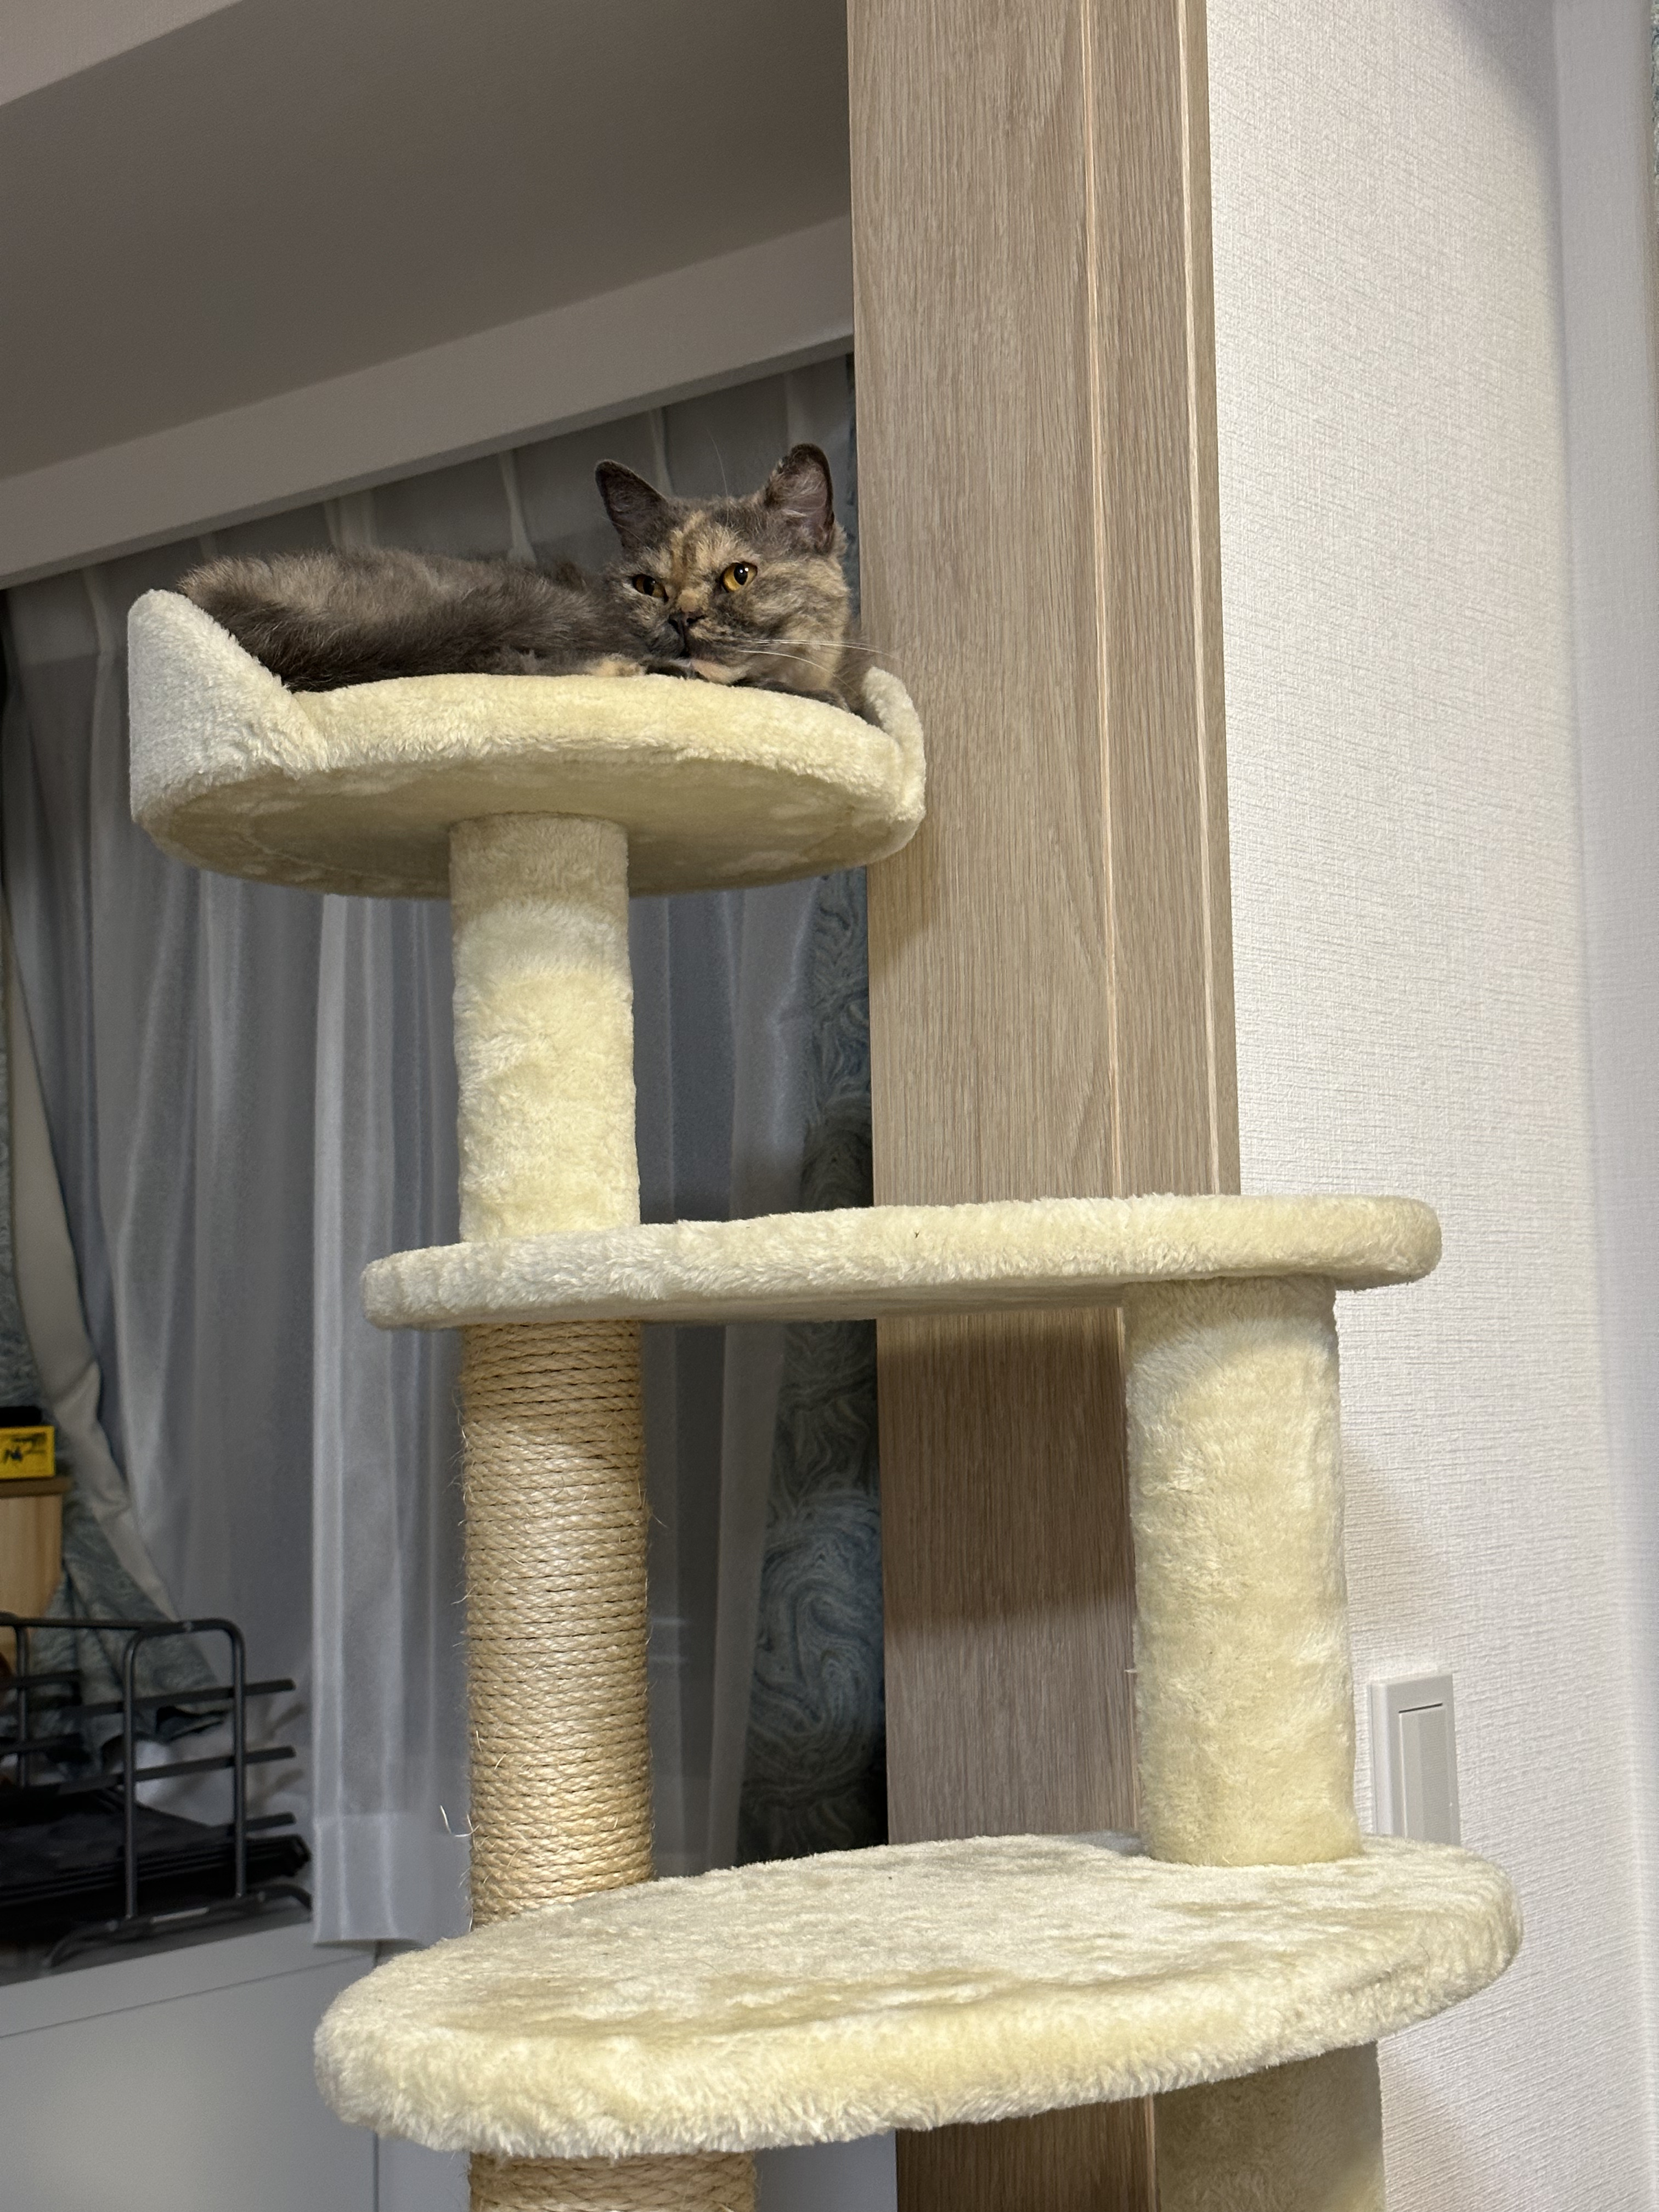 キャットタワーで過ごす猫